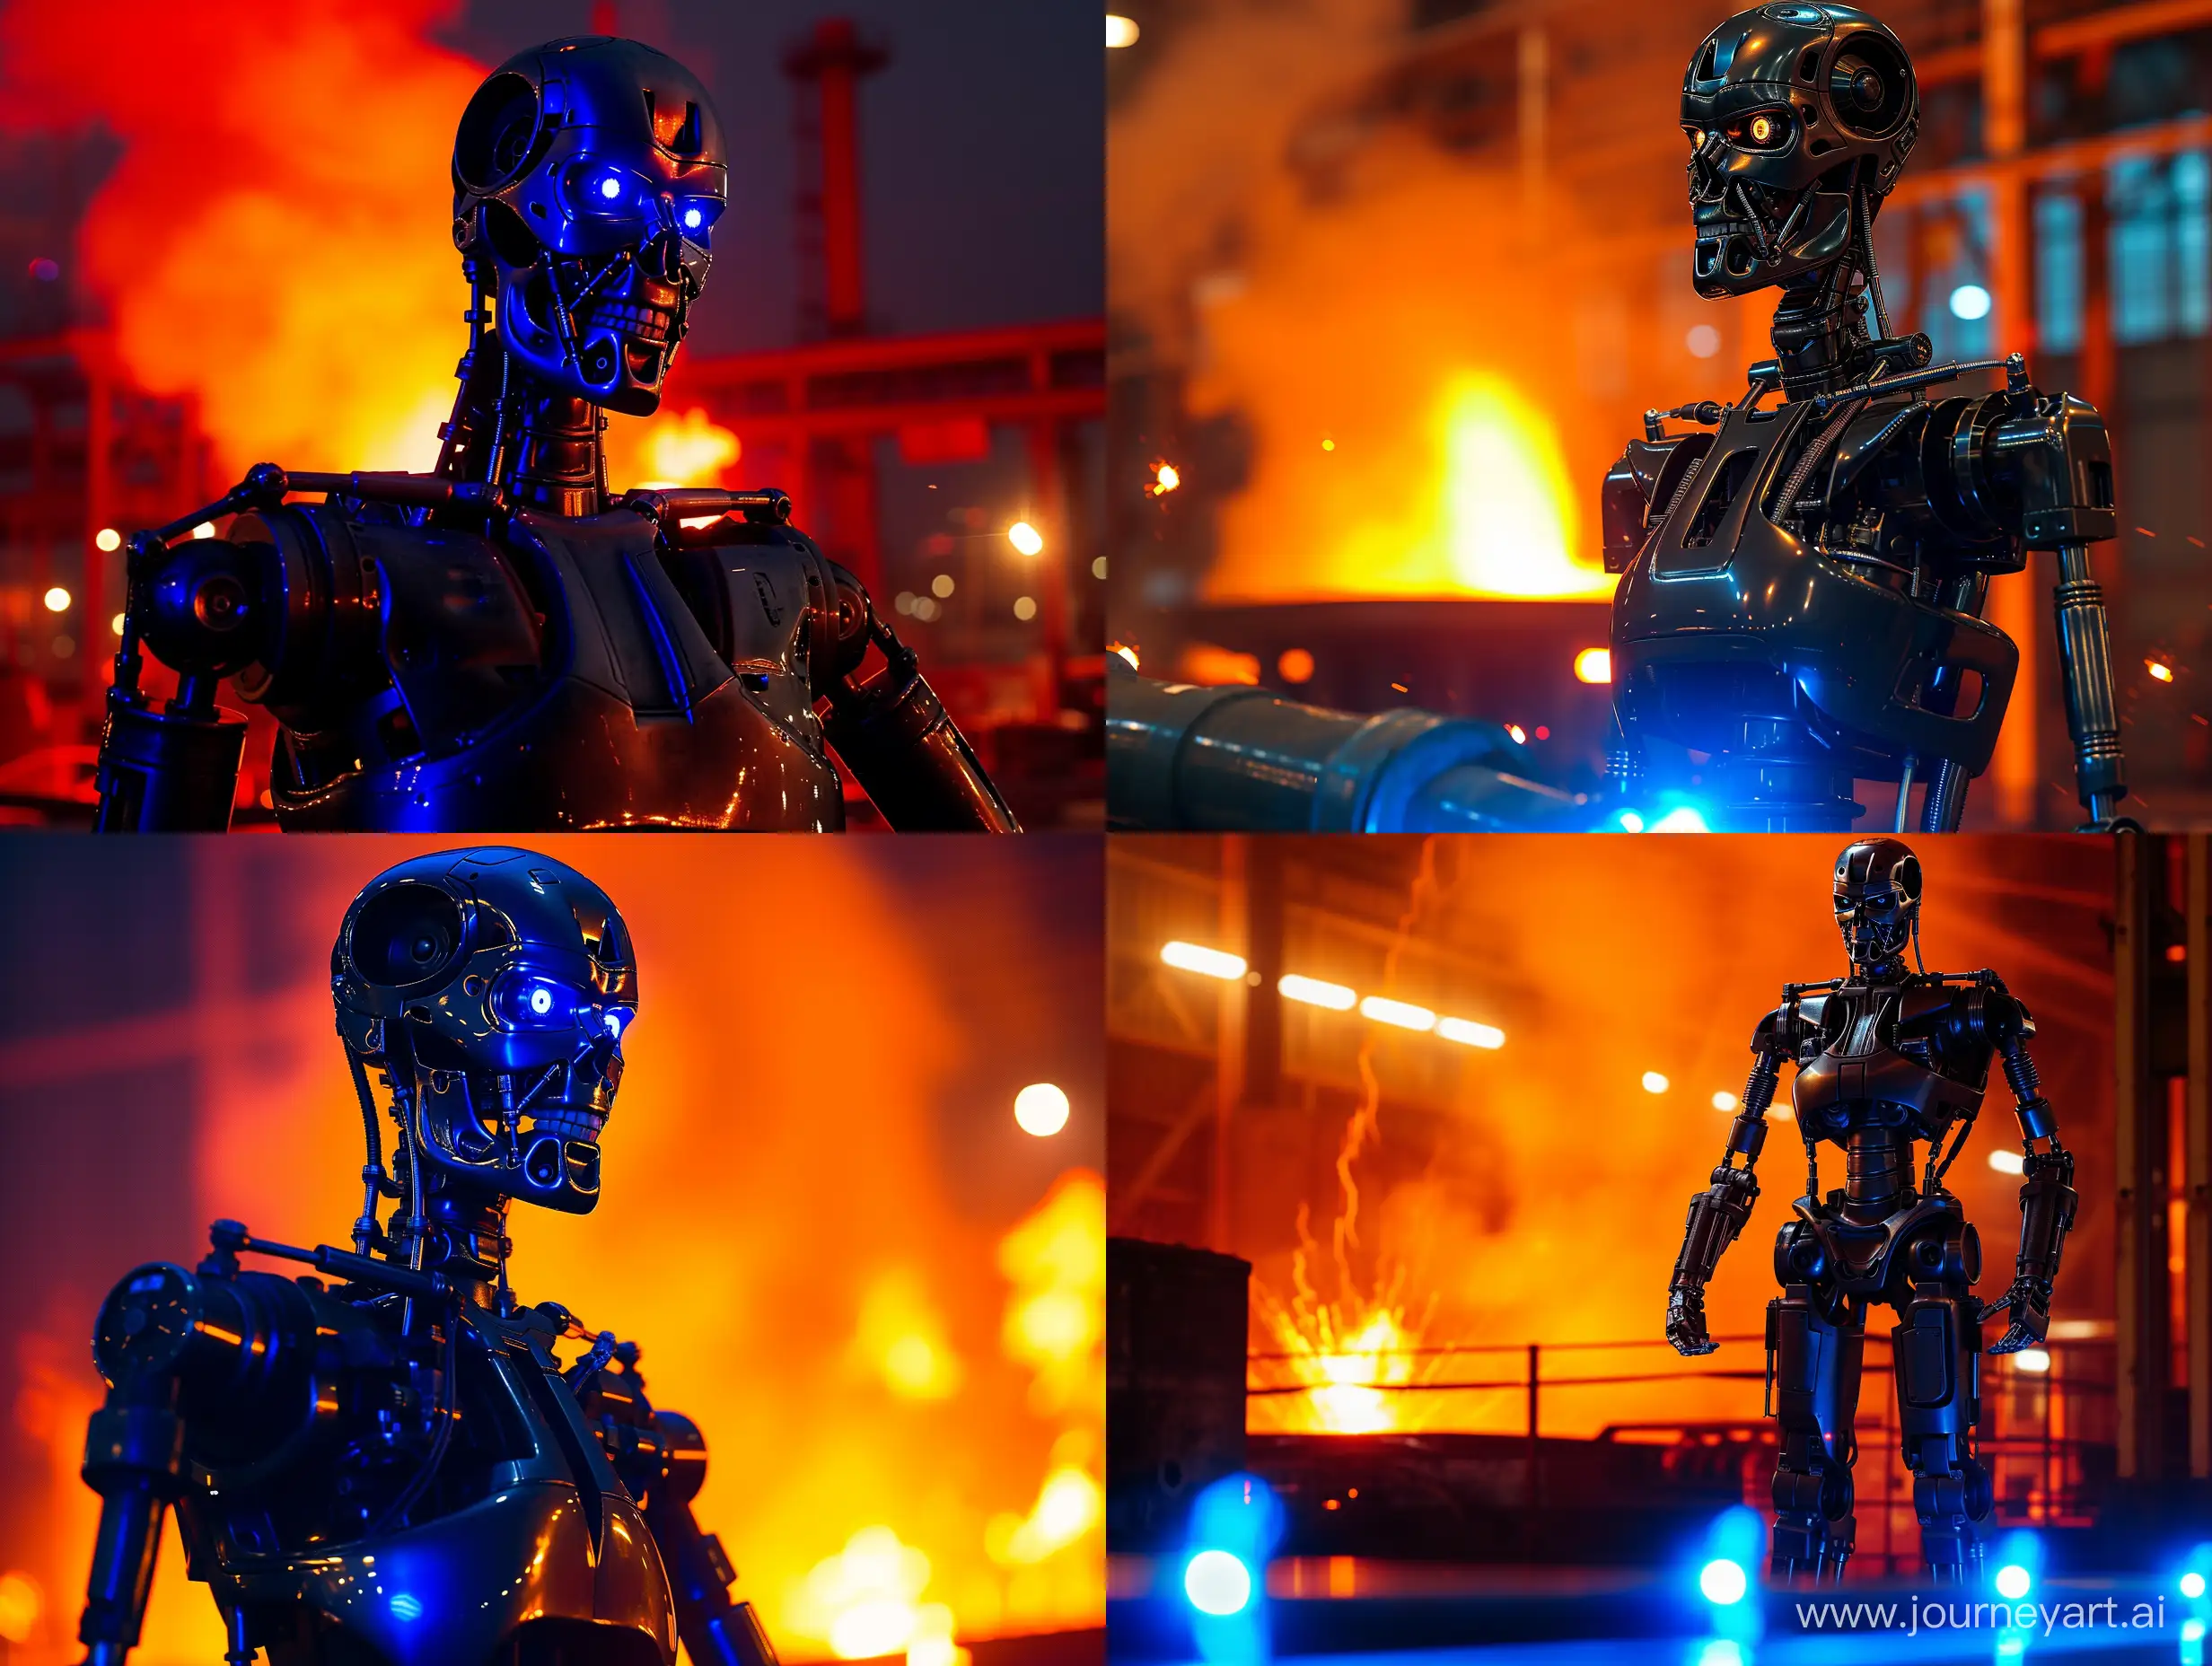 робот терминатор из одноименного фильма ночью на литейном заводе, на заднем плане оранжевый огонь, на переднем голубой свет, блики, отражения, фотореалистичность
